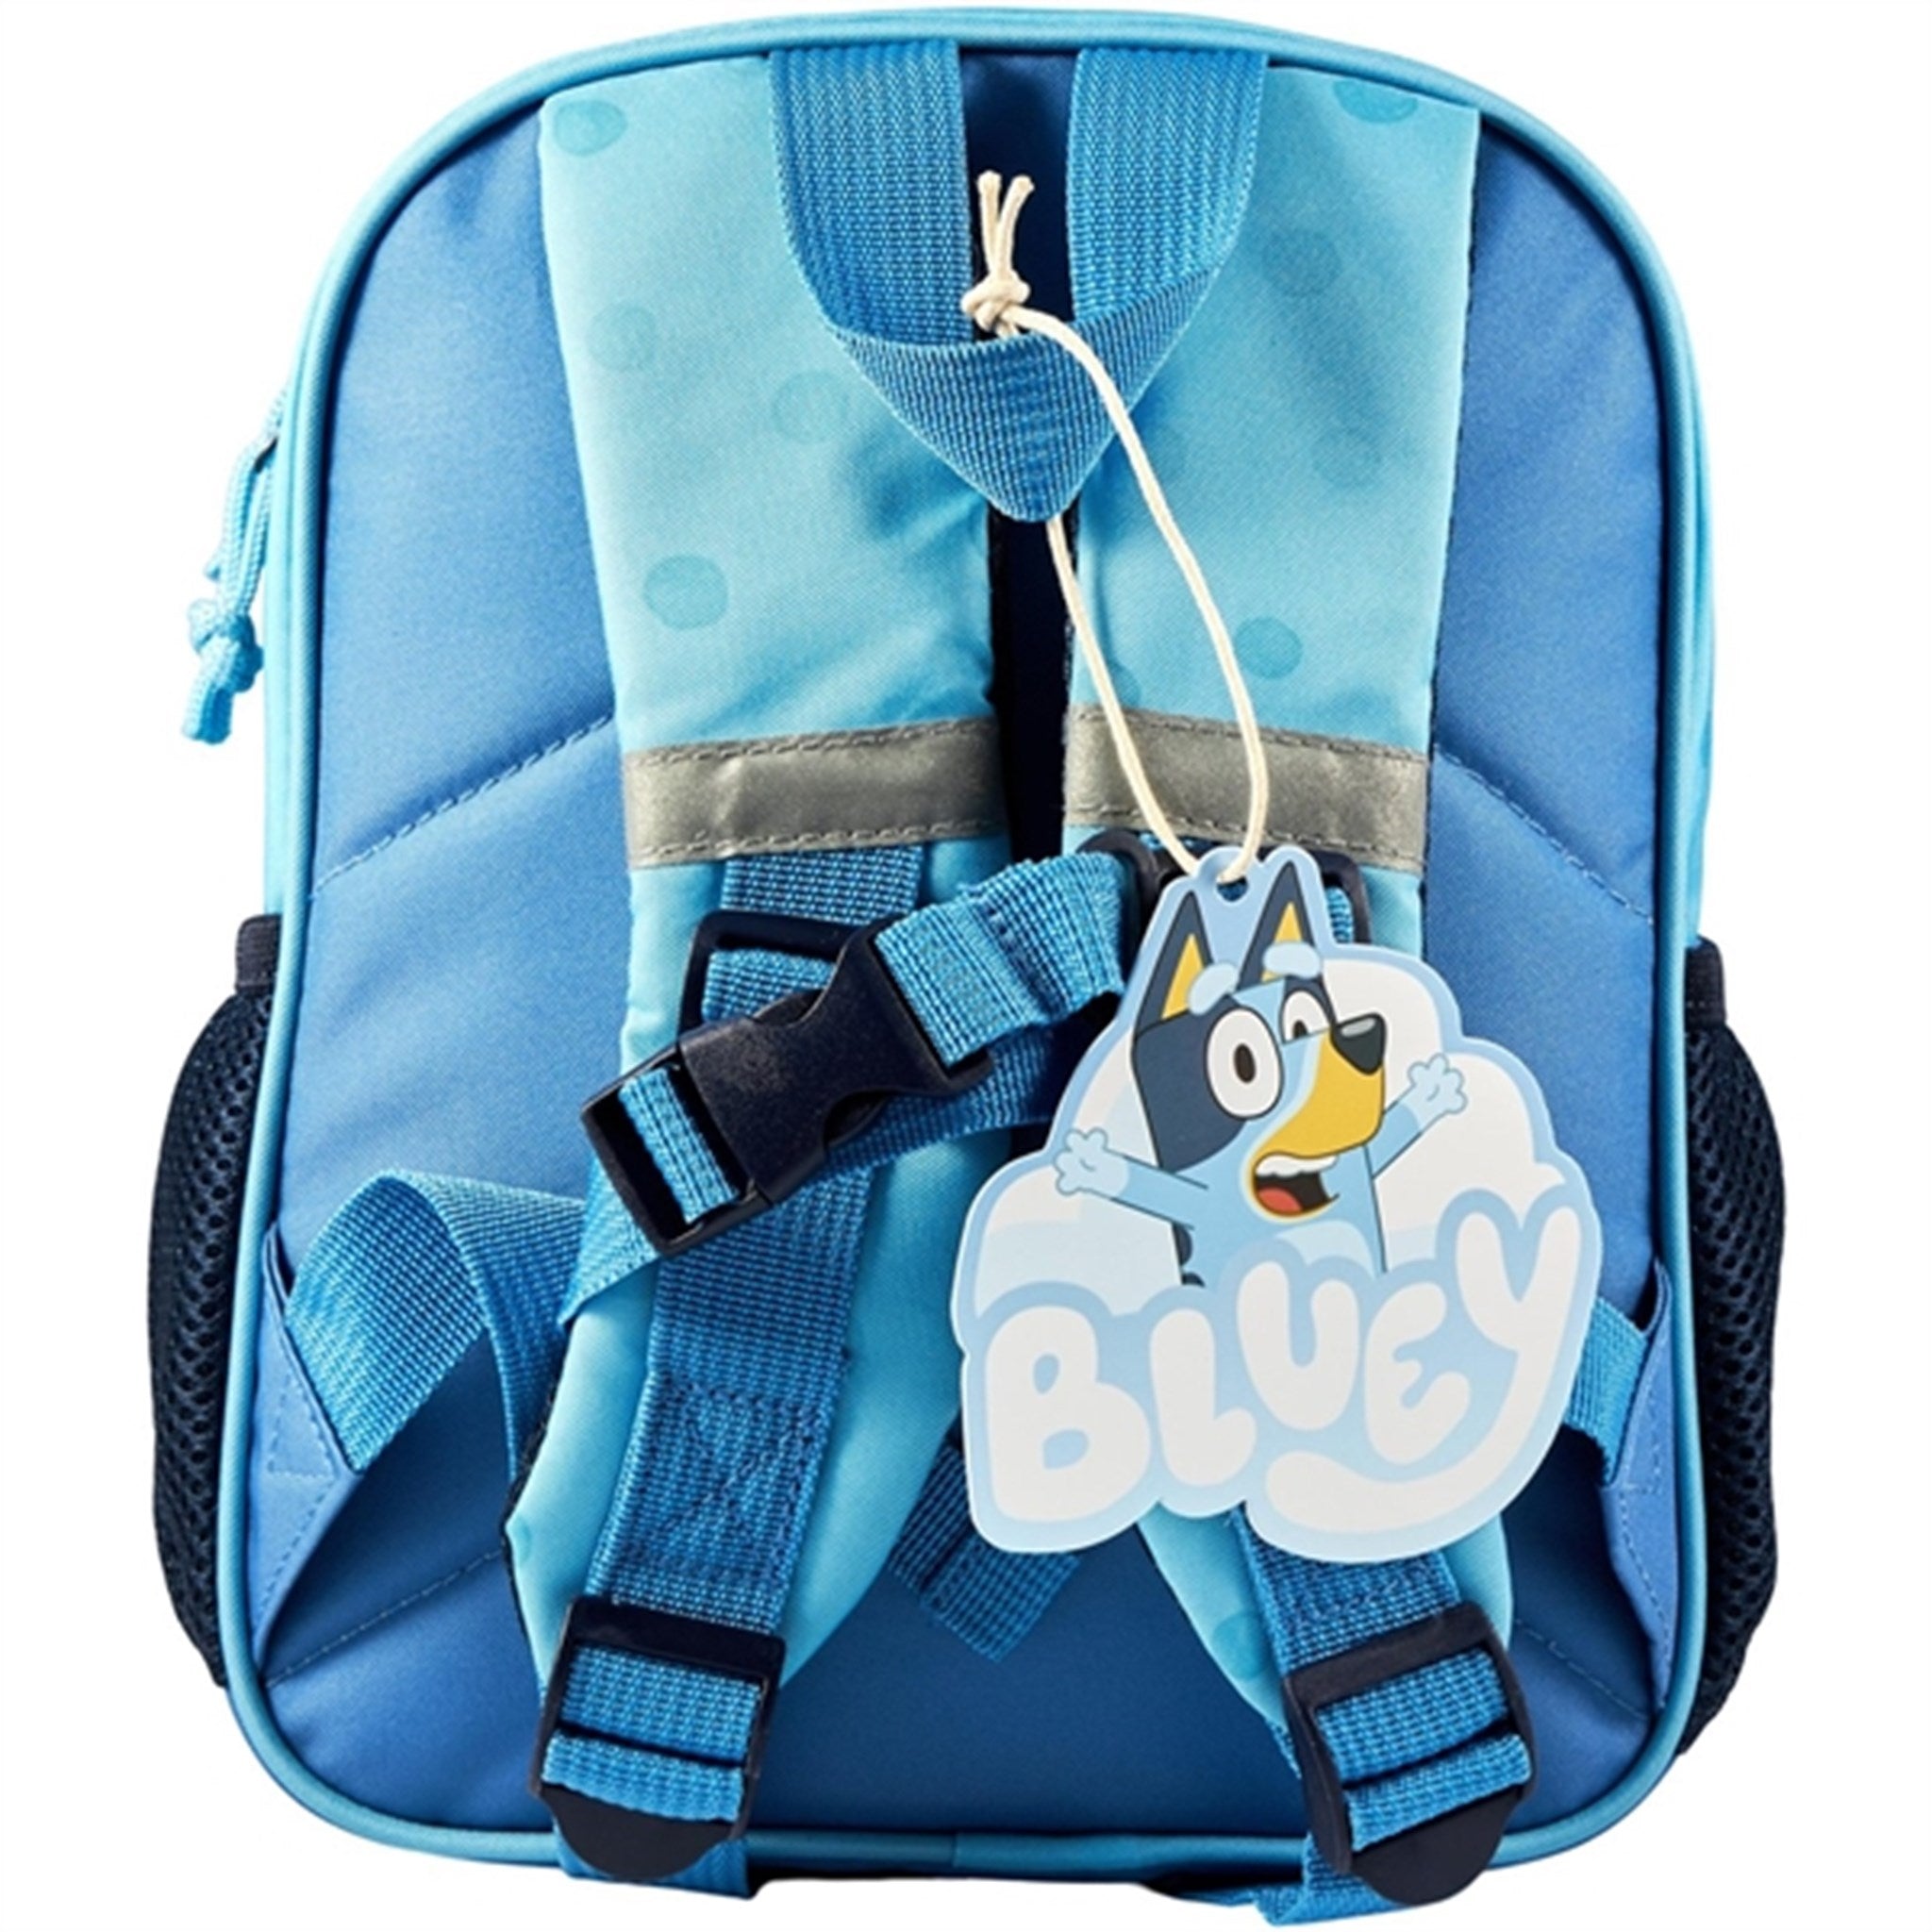 Euromic Bluey Backpack 3